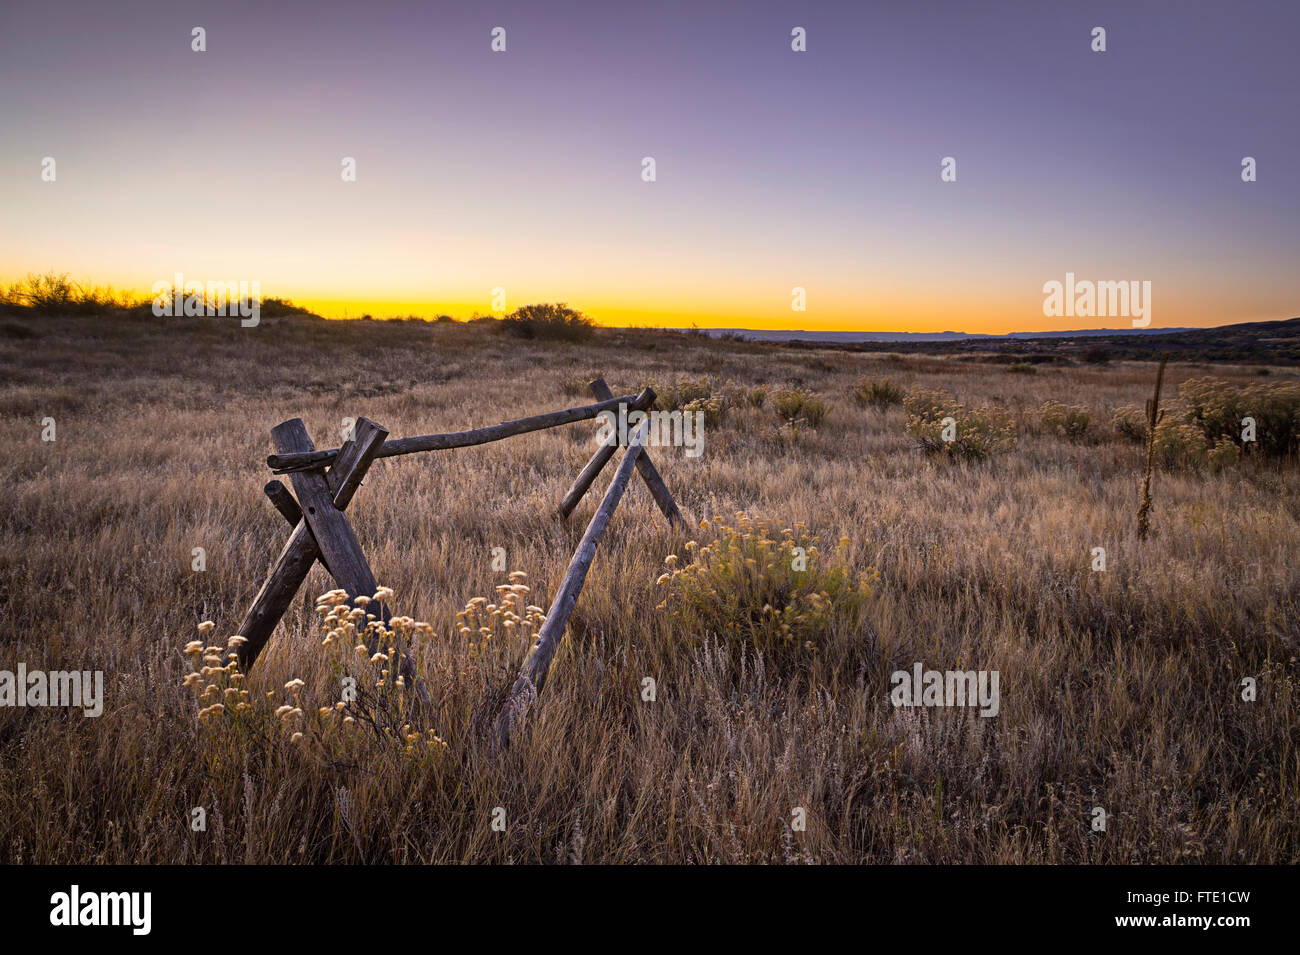 Zaun im Bereich aufgeteilt, bei Sonnenaufgang, amerikanischen Westens Landschaft, Colorado, USA Stockfoto